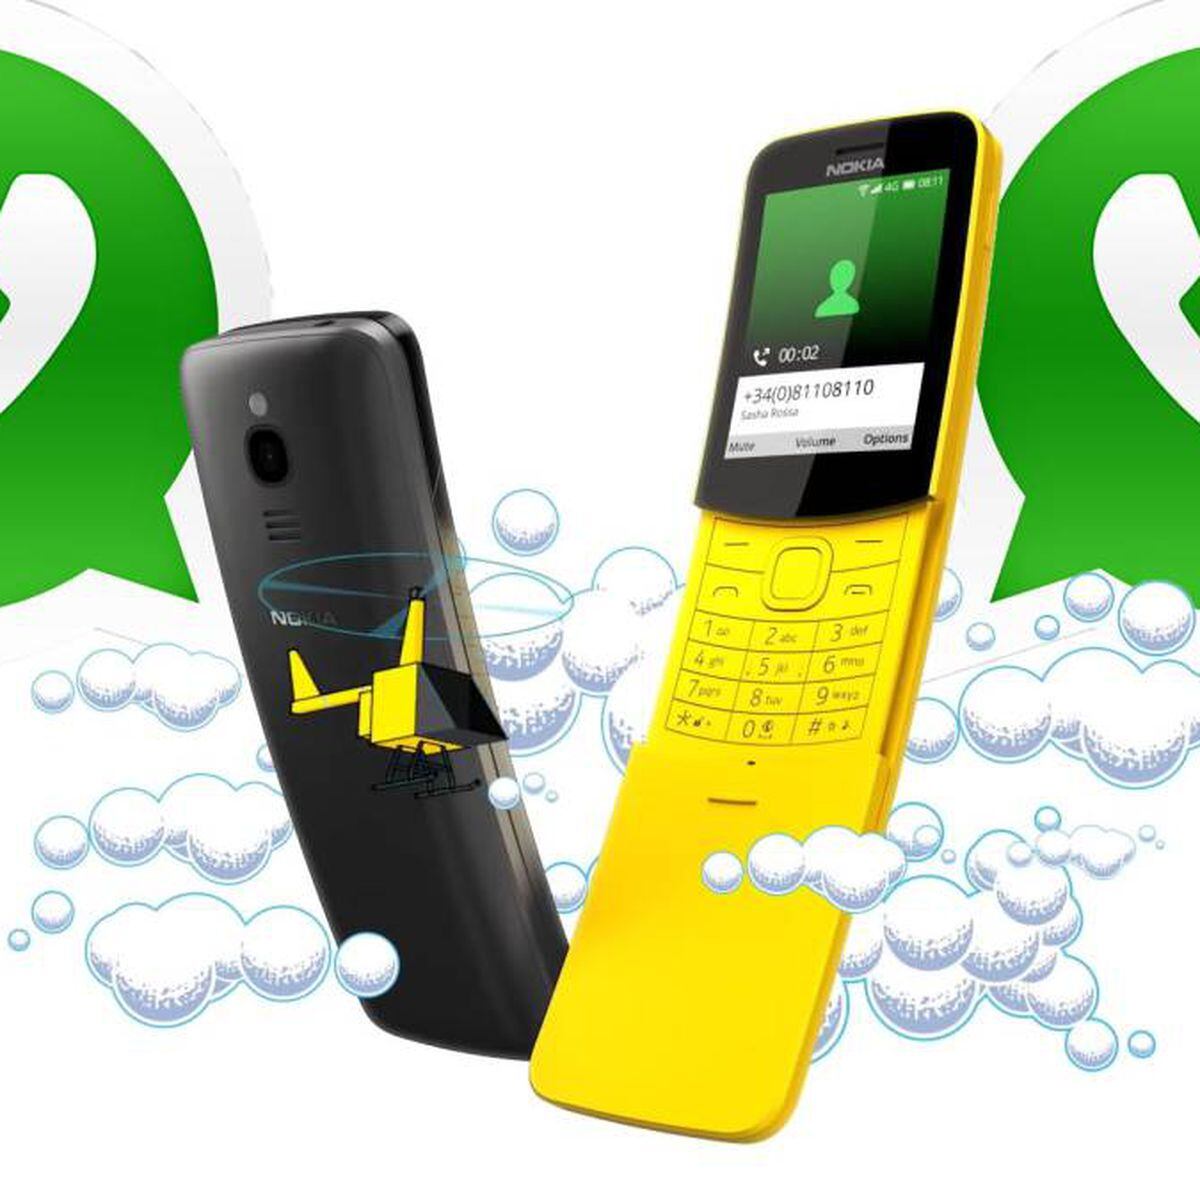 WhatsApp podría llegar pronto al nuevo Nokia 8810, Smartphones